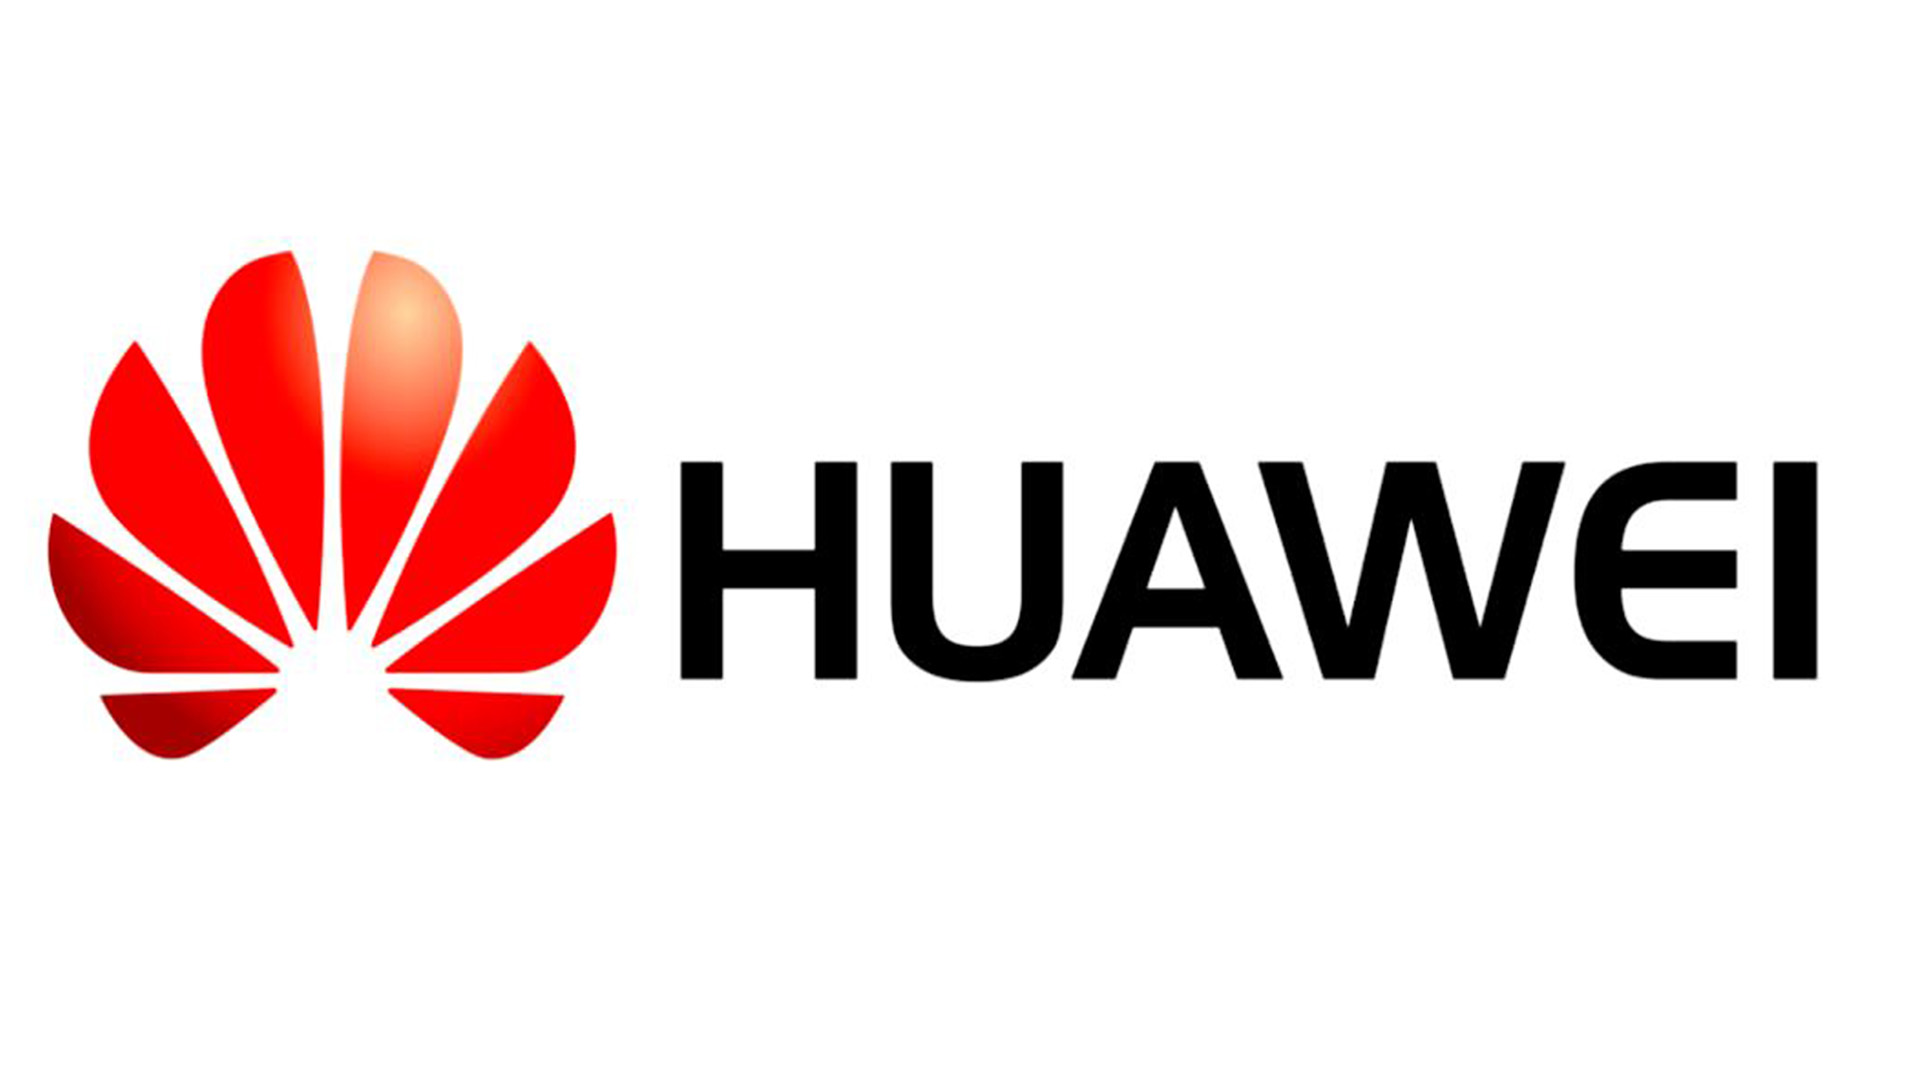 Huawei võib minna üle Sailfishi operatsioonisüsteemile: kas see on halb idee?